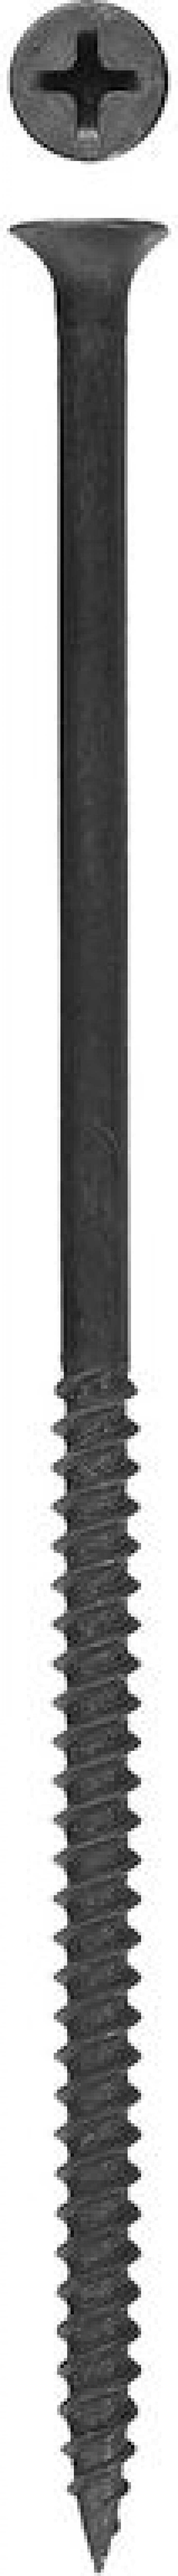 Саморез СГМ гипсокартон-металл 4.8 мм x 10.2 см (PH2), фосфатированное покрытие, черный, 300 шт., ЗУБР Профессионал (300015-48-102)